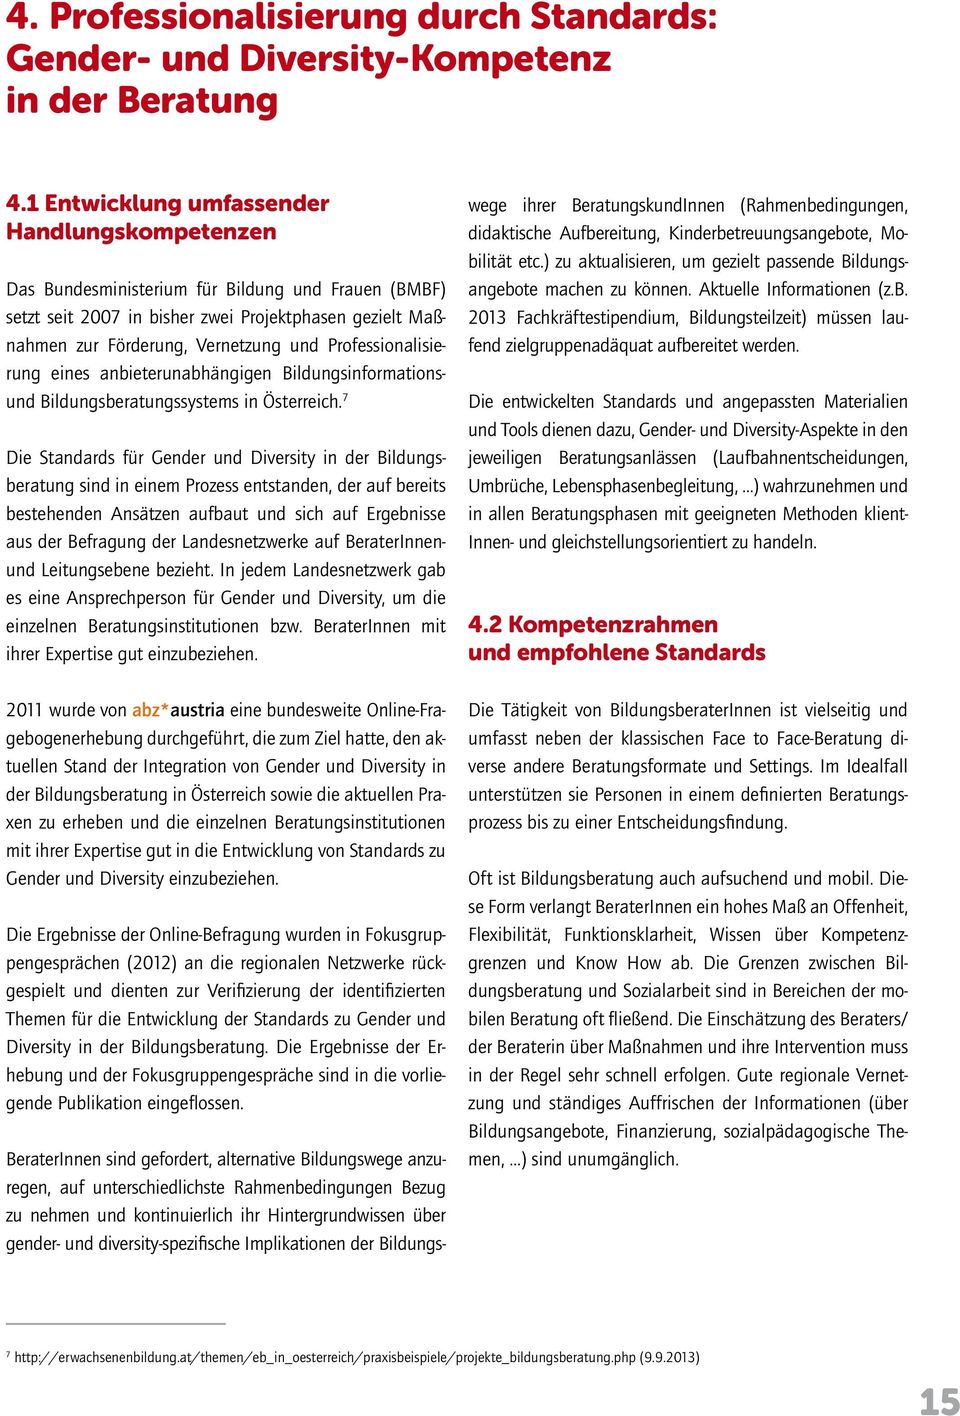 Professionalisierung eines anbieterunabhängigen Bildungsinformationsund Bildungsberatungssystems in Österreich.